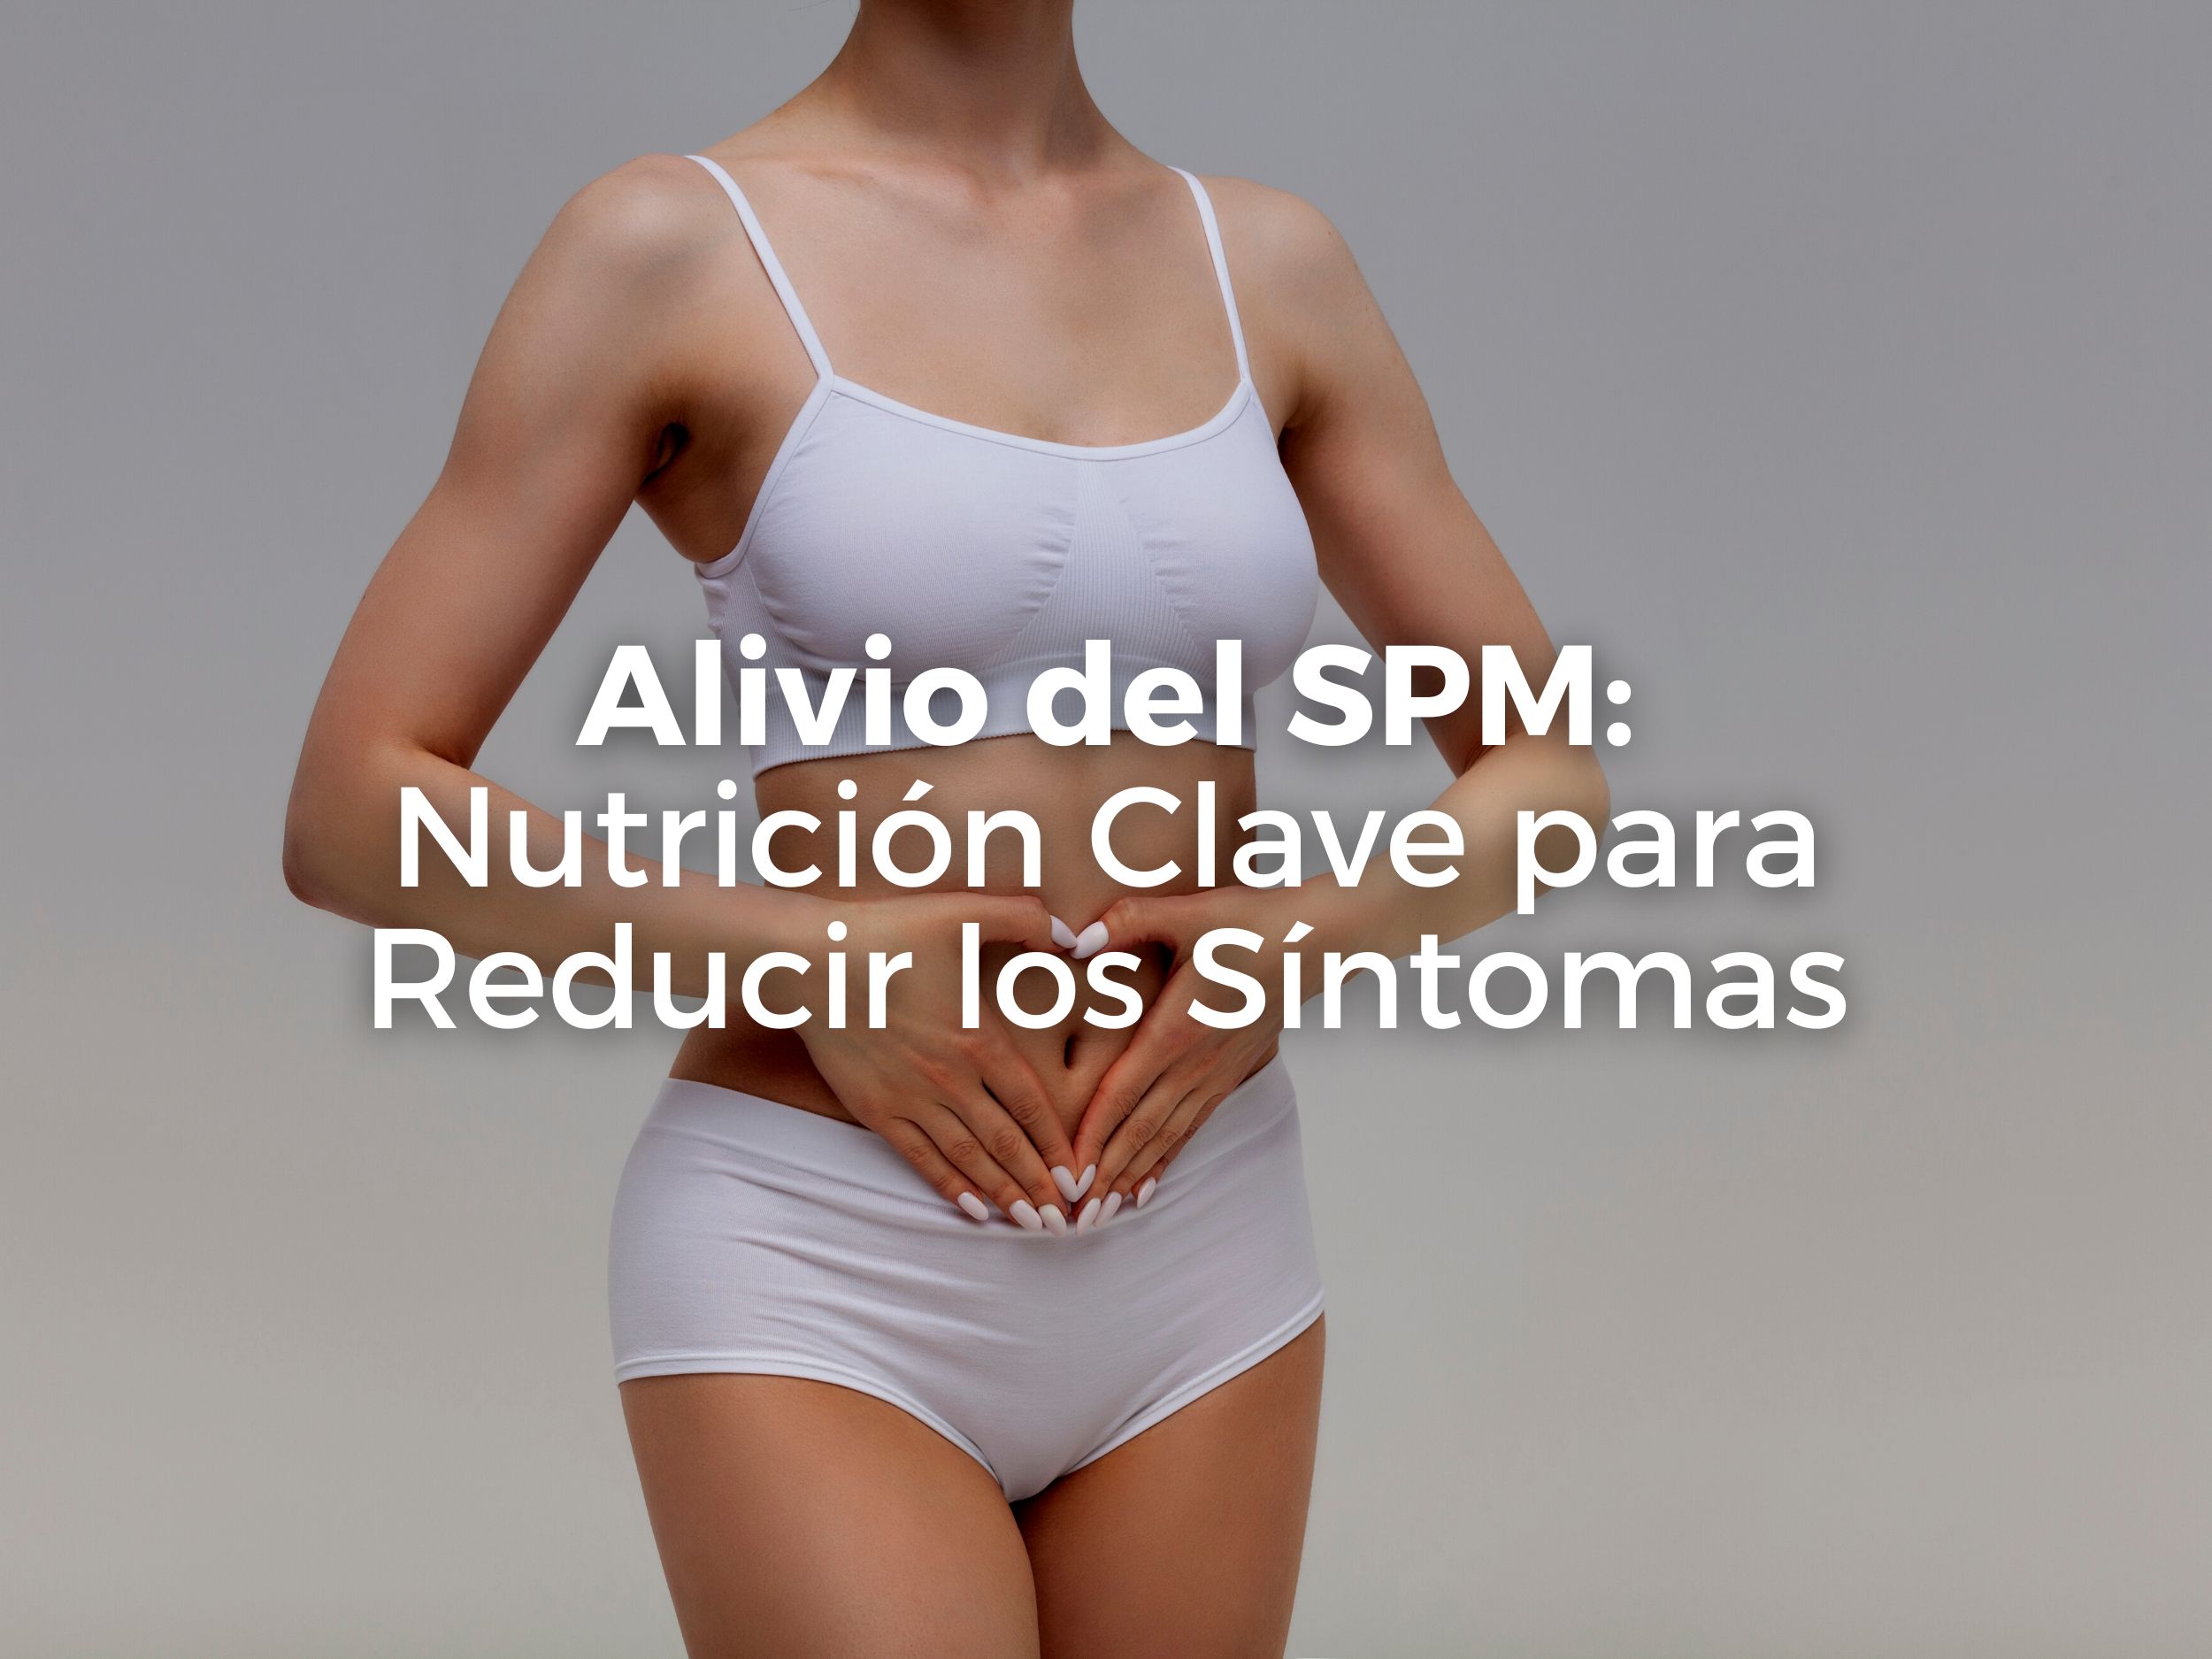 Alivio del SPM: Nutrición Clave para Reducir los Síntomas